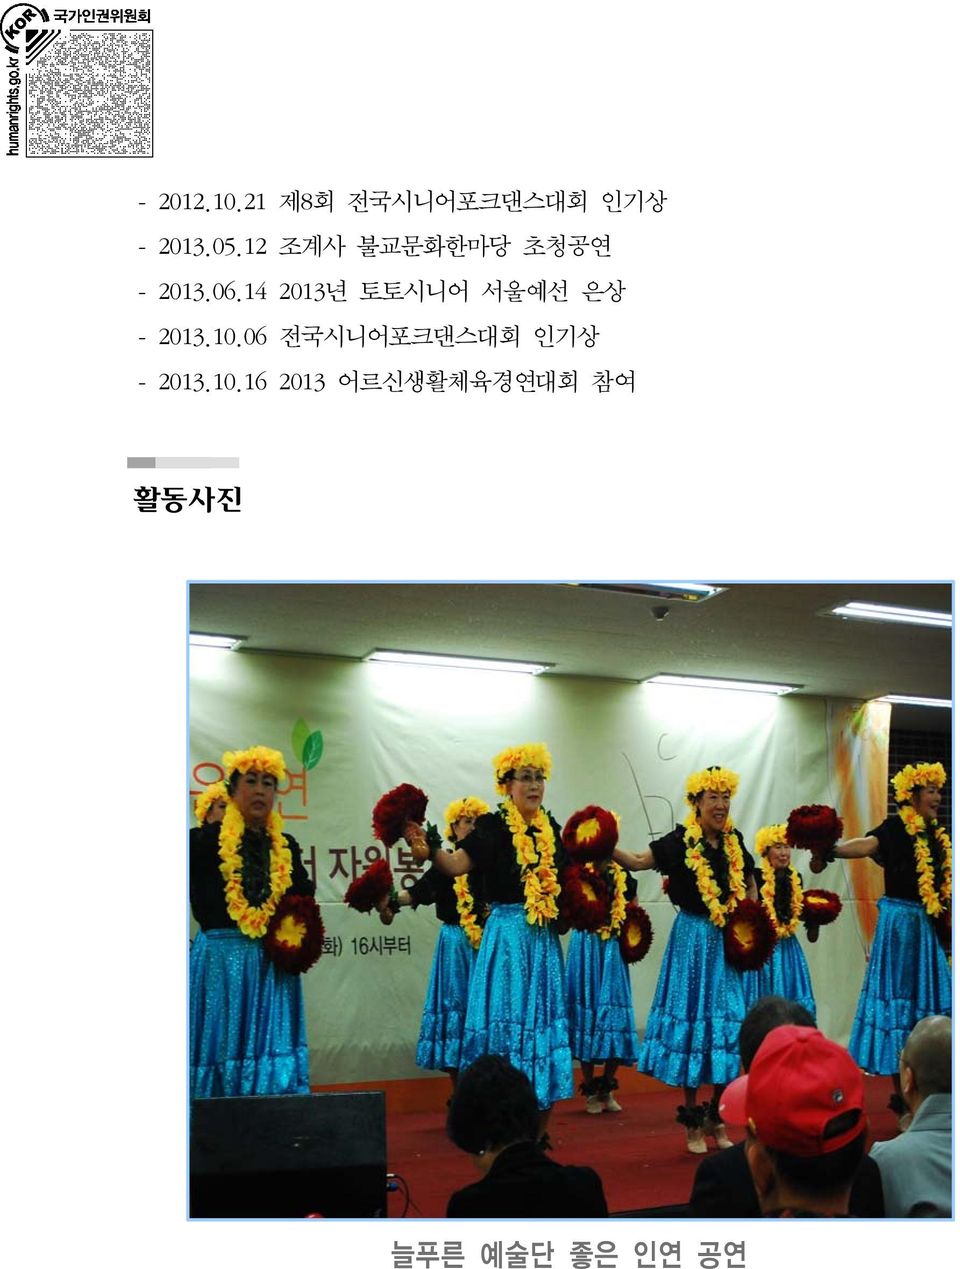 14 2013년 토토시니어 서울예선 은상 - 2013.10.